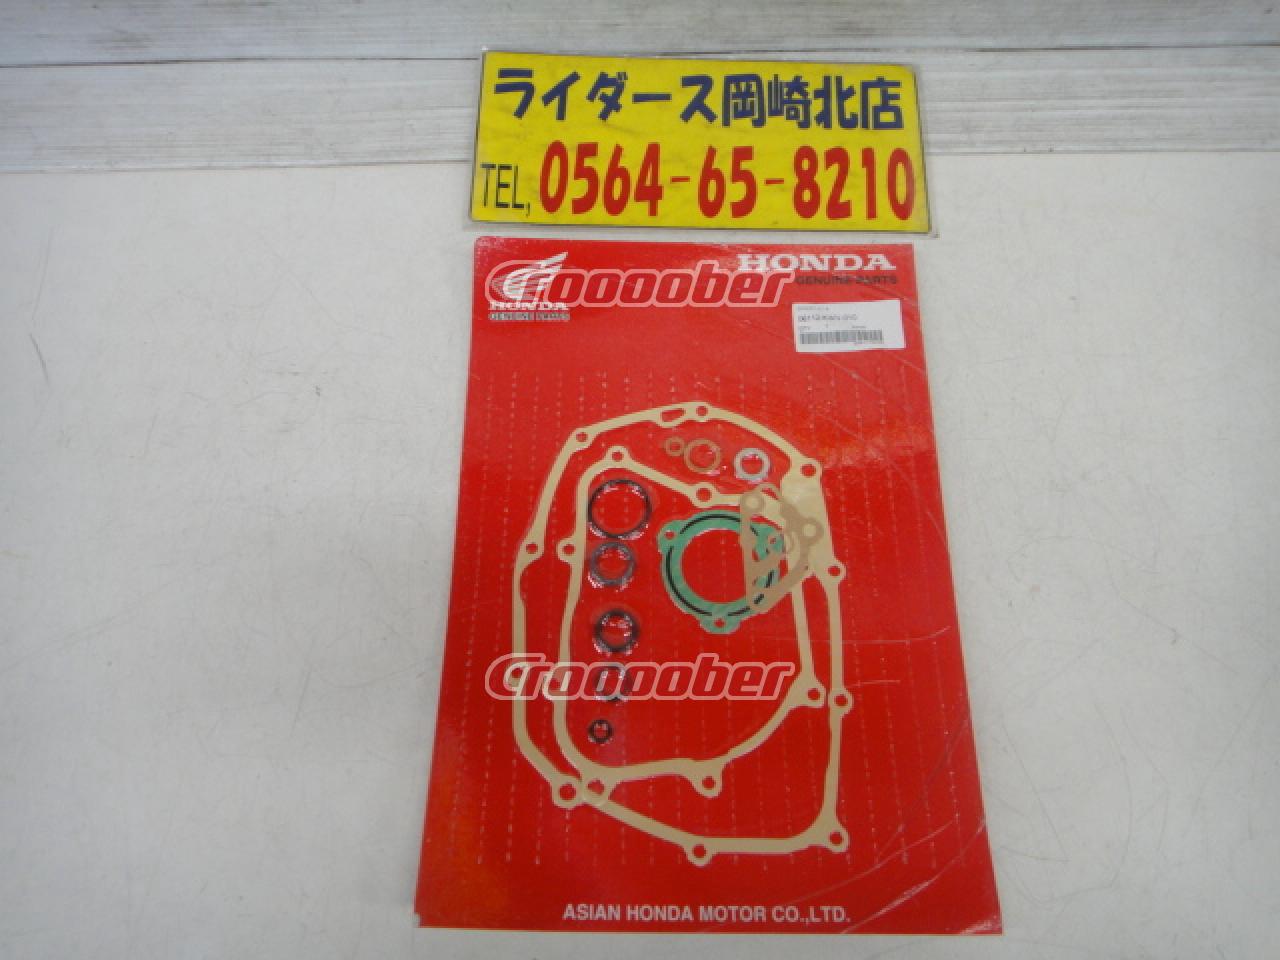 HONDA(ホンダ) ガスケットキットB 06112-KWV-010 【スーパーカブ110